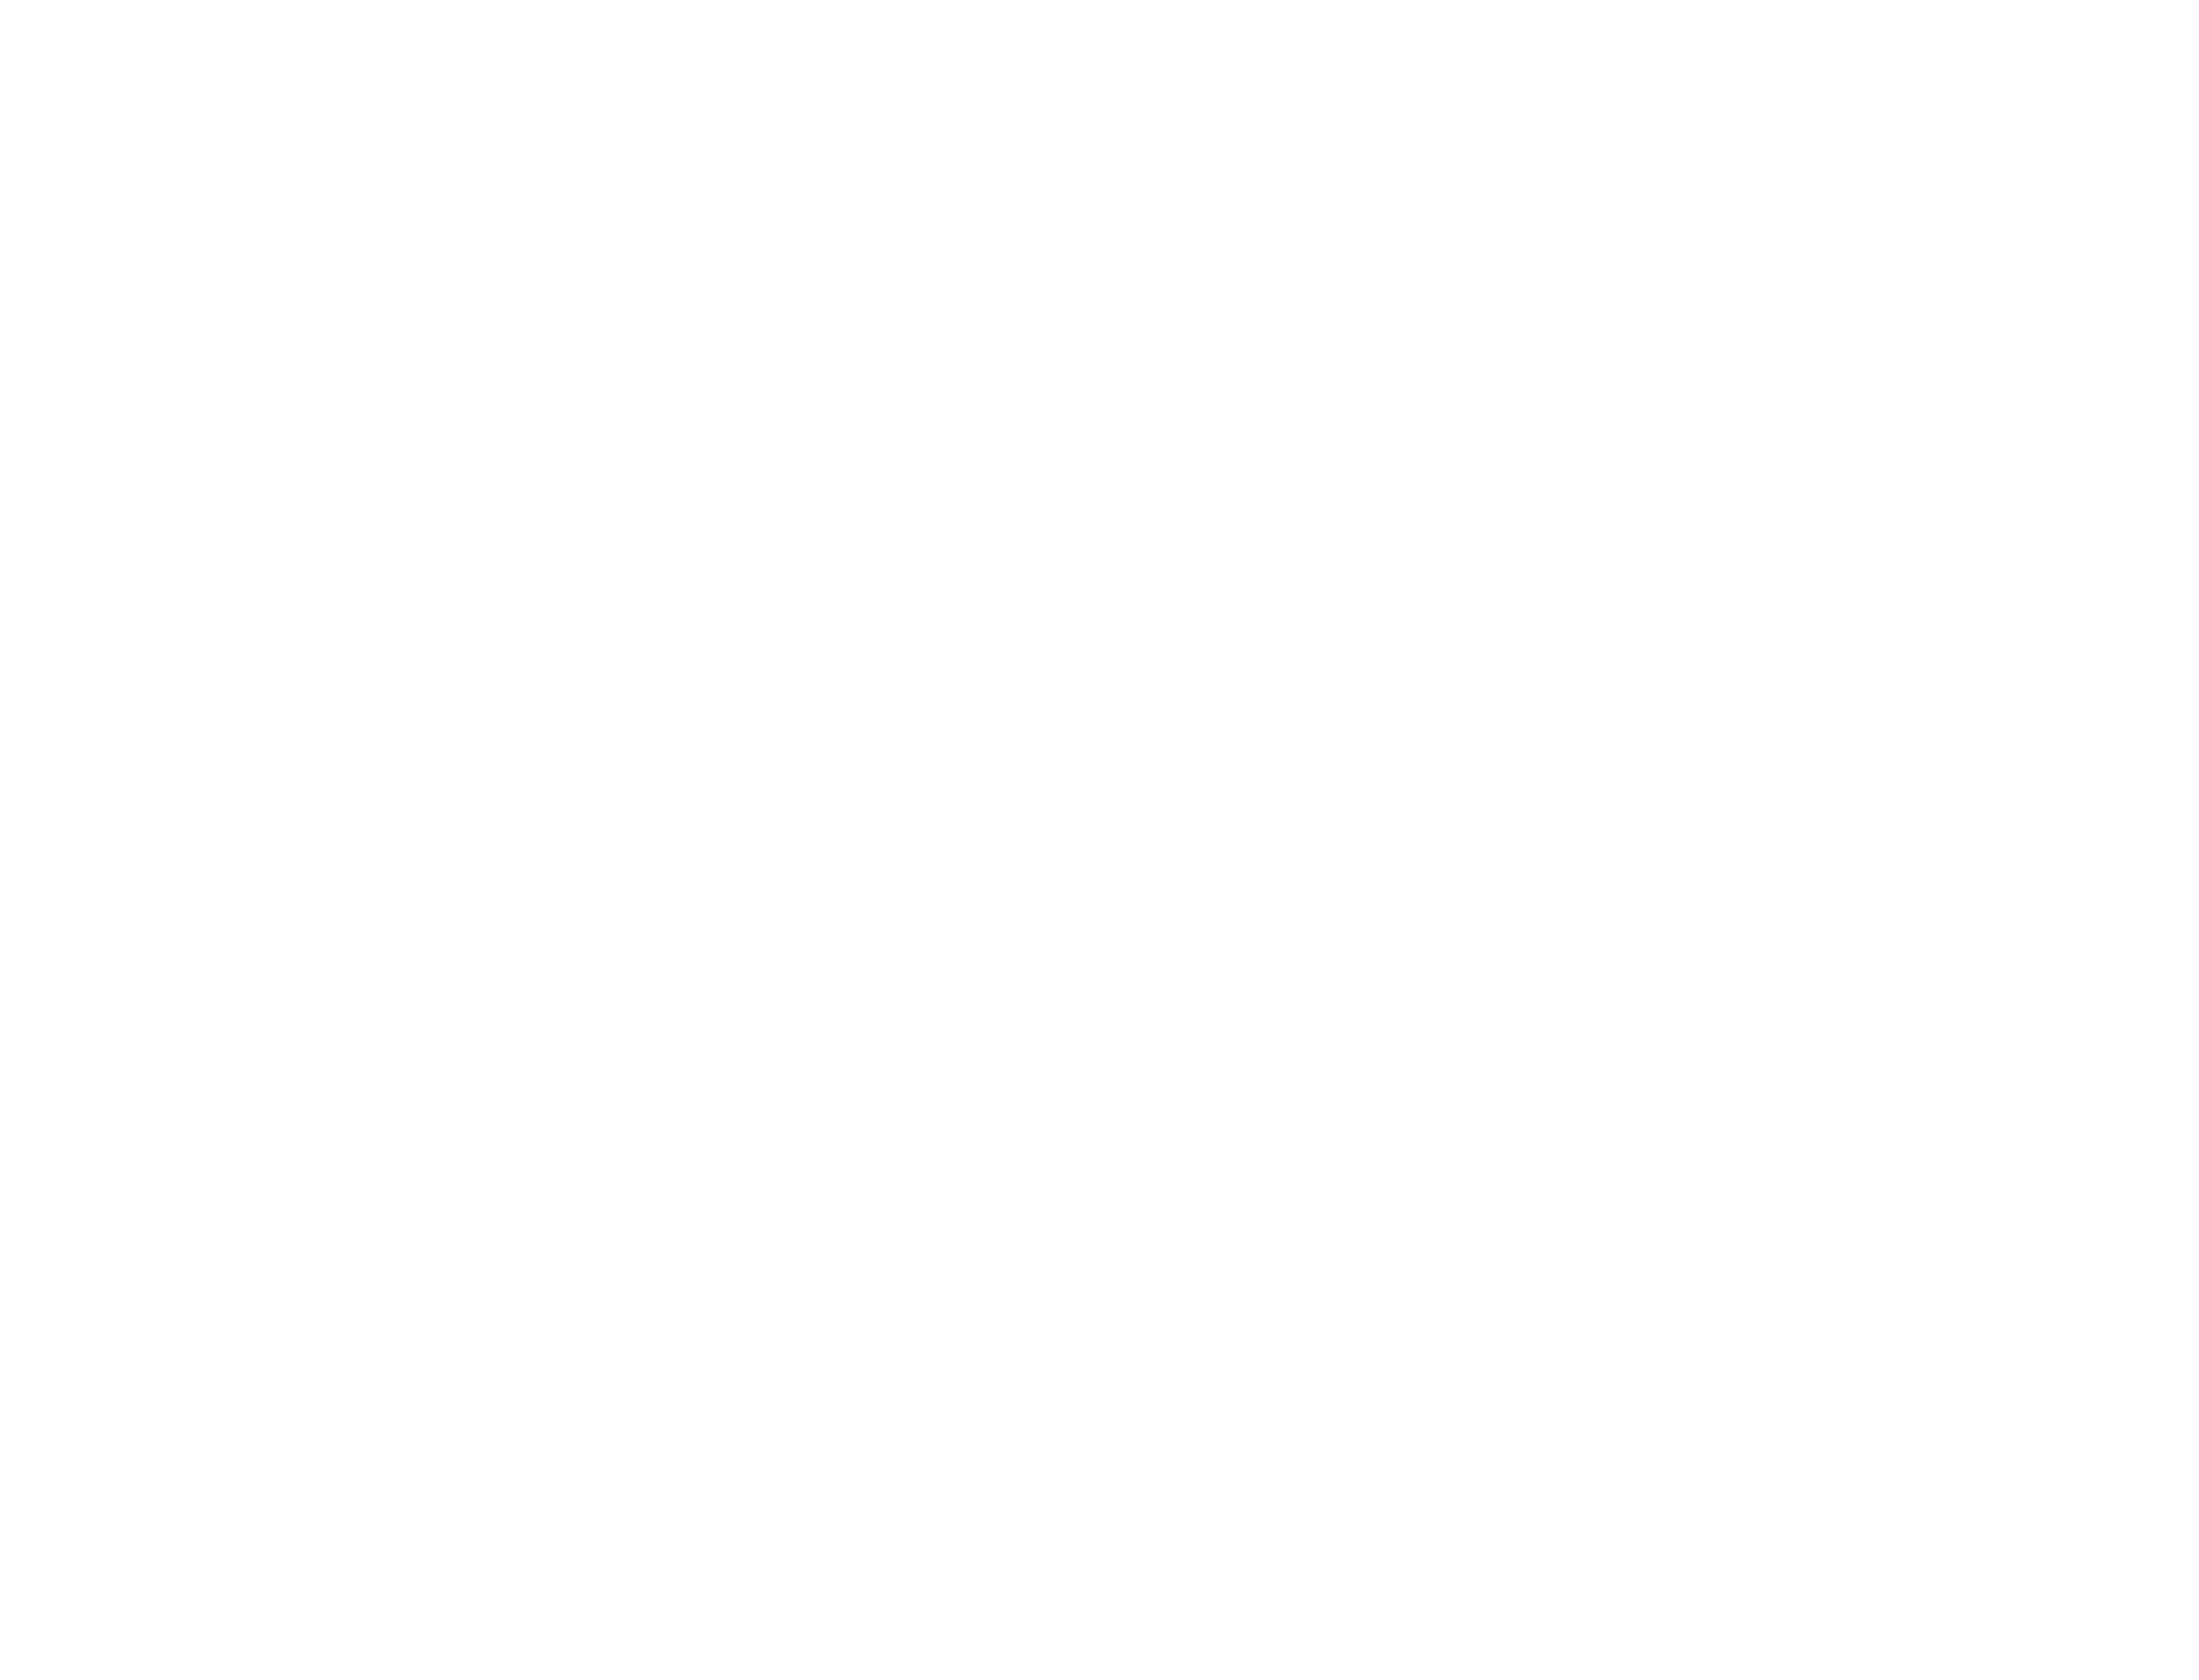 MATH TUTORING es un programa de tutoría y enriquecimiento matemático que combina la tutoría presencial en pequeño grupo con una plataforma online. Su finalidad es acompañar en el aprendizaje de las matemáticas a aquellos alumnos que más lo necesitan.